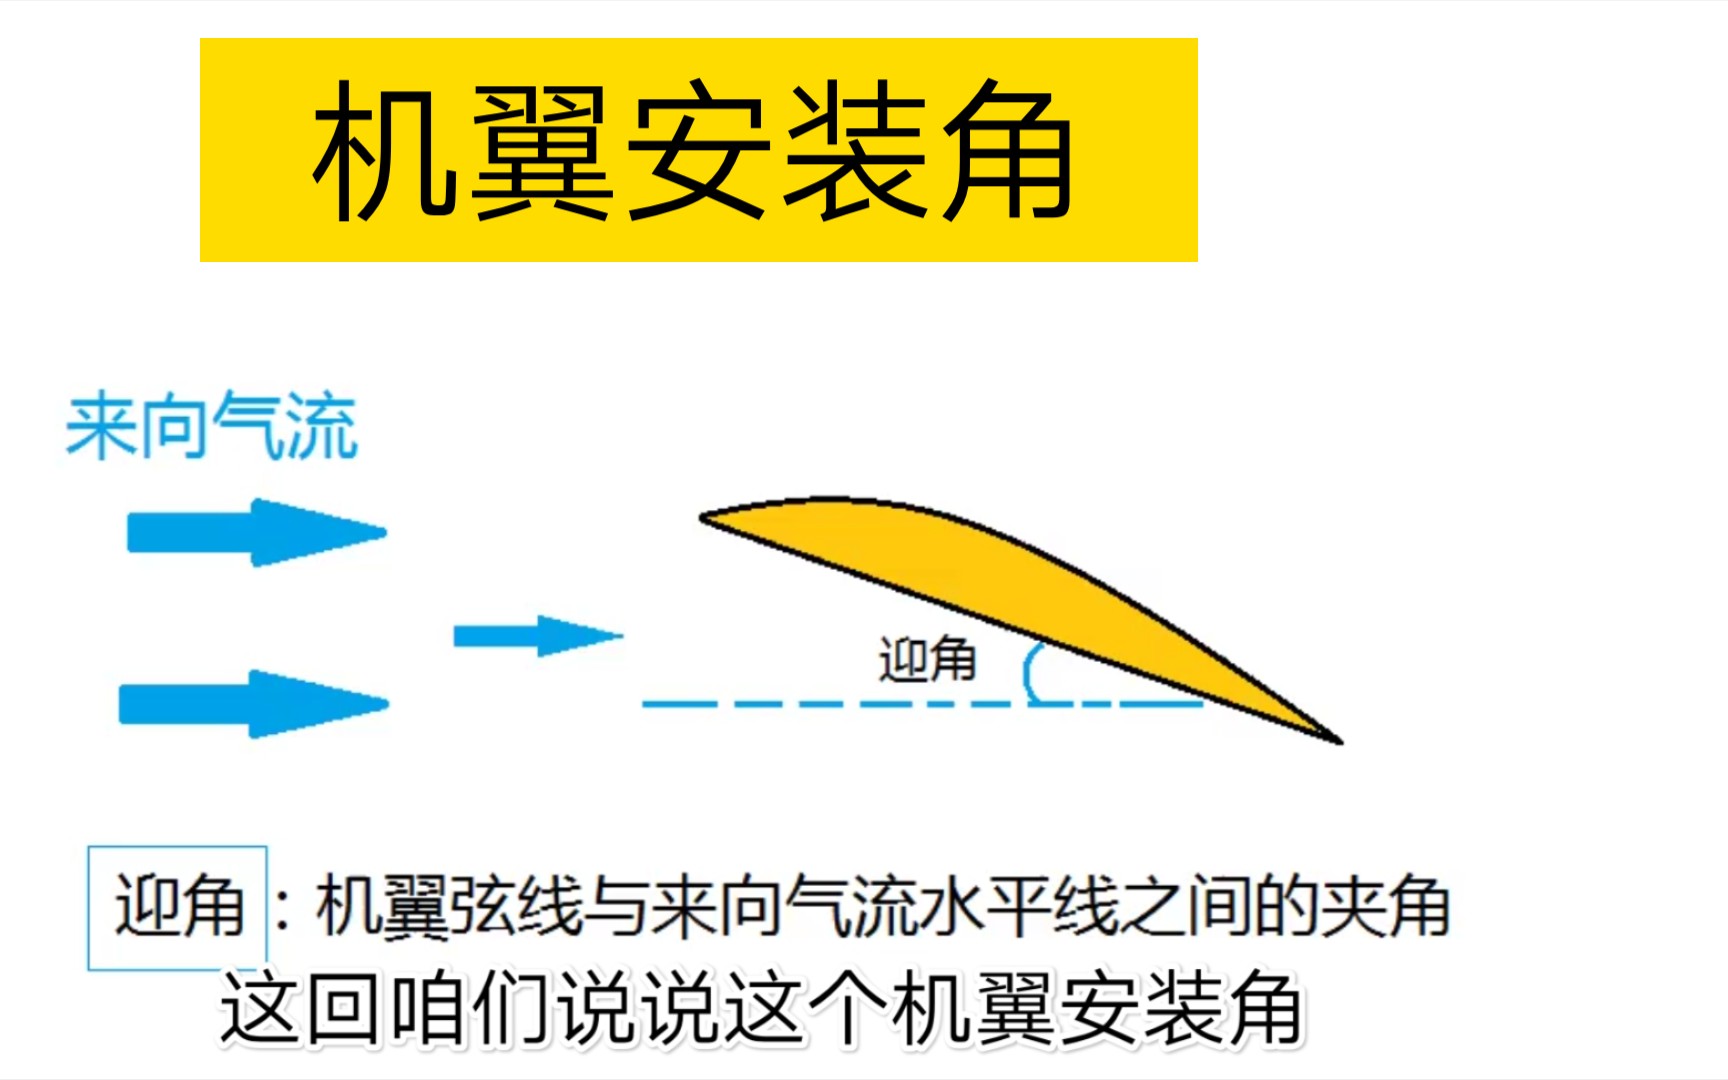 【航模关键词——机翼安装角】机翼弦线与机身水平线之间的夹角叫做